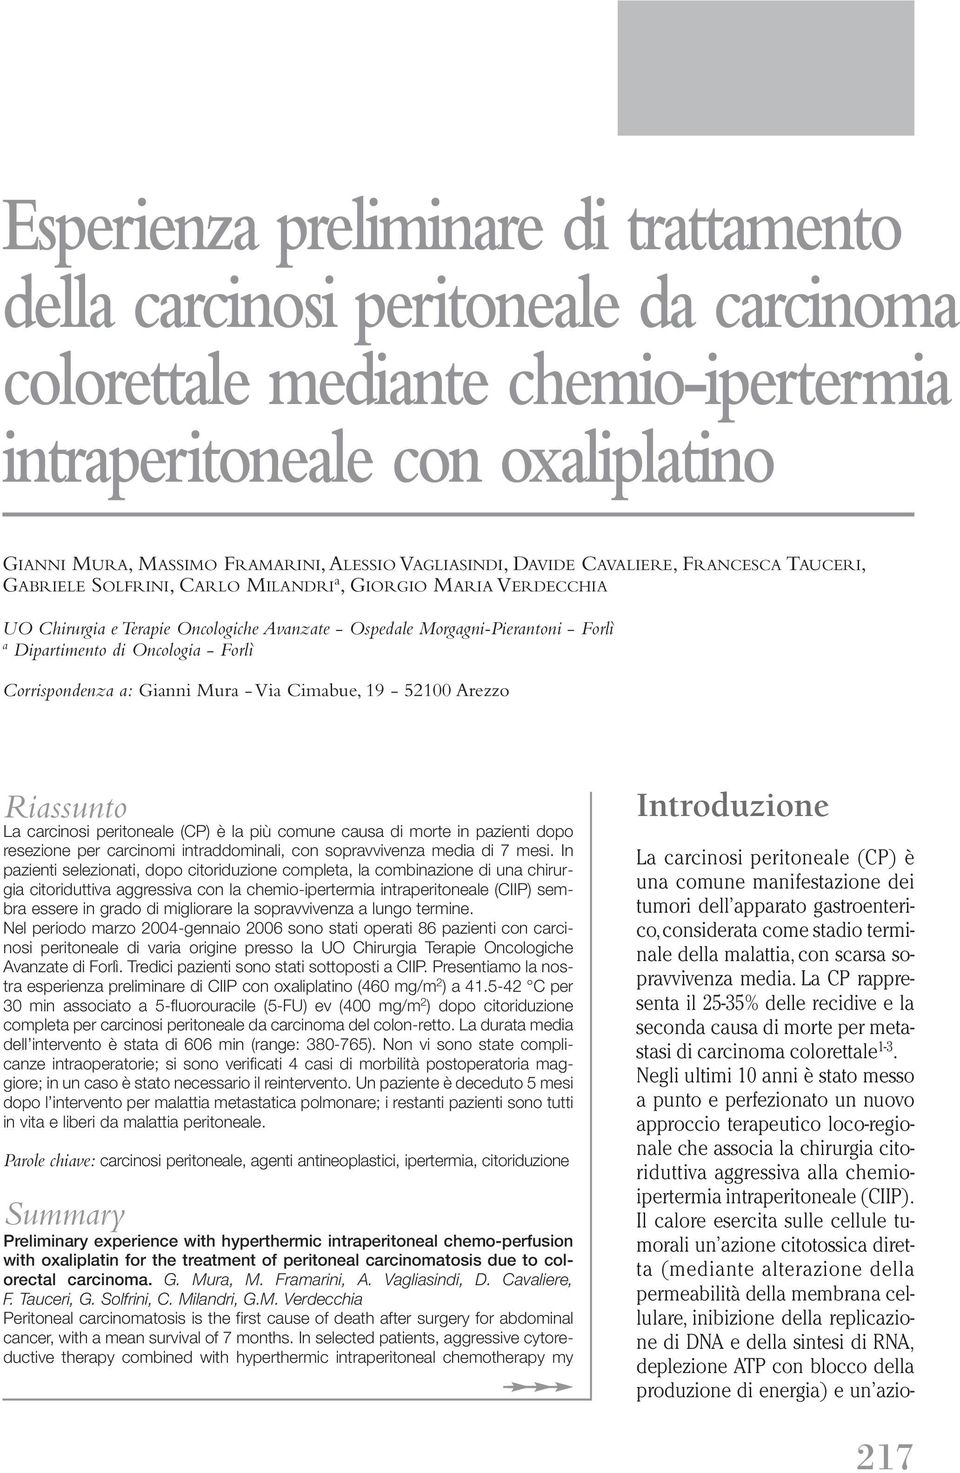 Dipartimento di Oncologia - Forlì Corrispondenza a: Gianni Mura - Via Cimabue, 19-52100 Arezzo Riassunto La carcinosi peritoneale (CP) è la più comune causa di morte in pazienti dopo resezione per